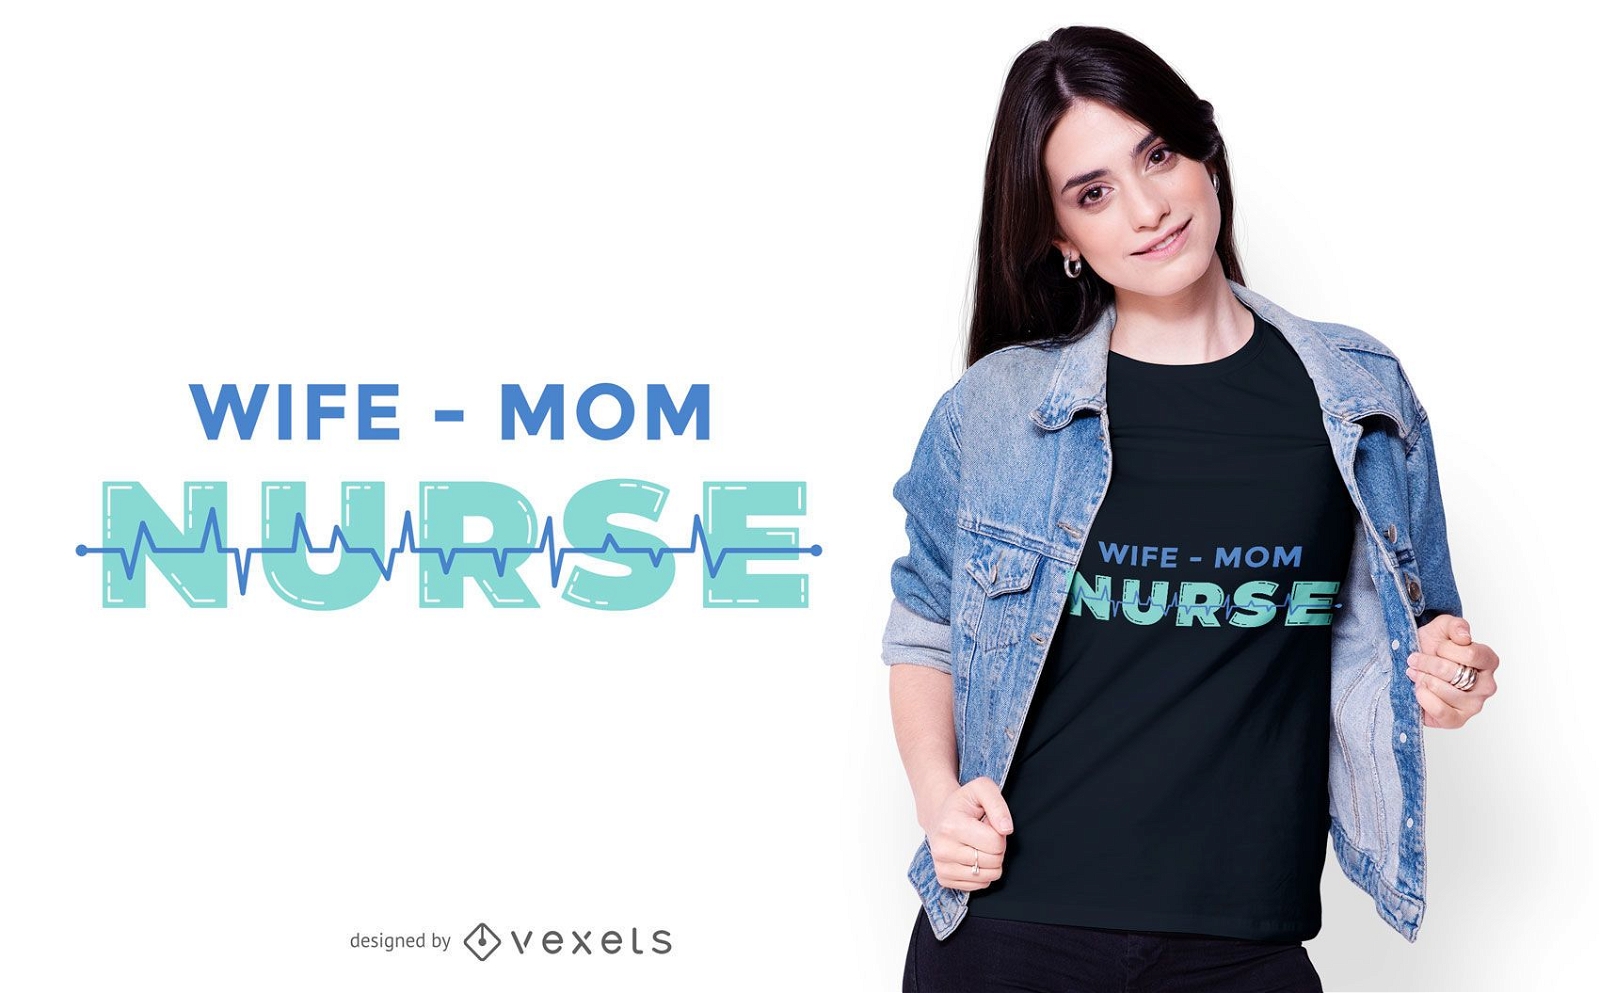 Wife mom nurse t-shirt design